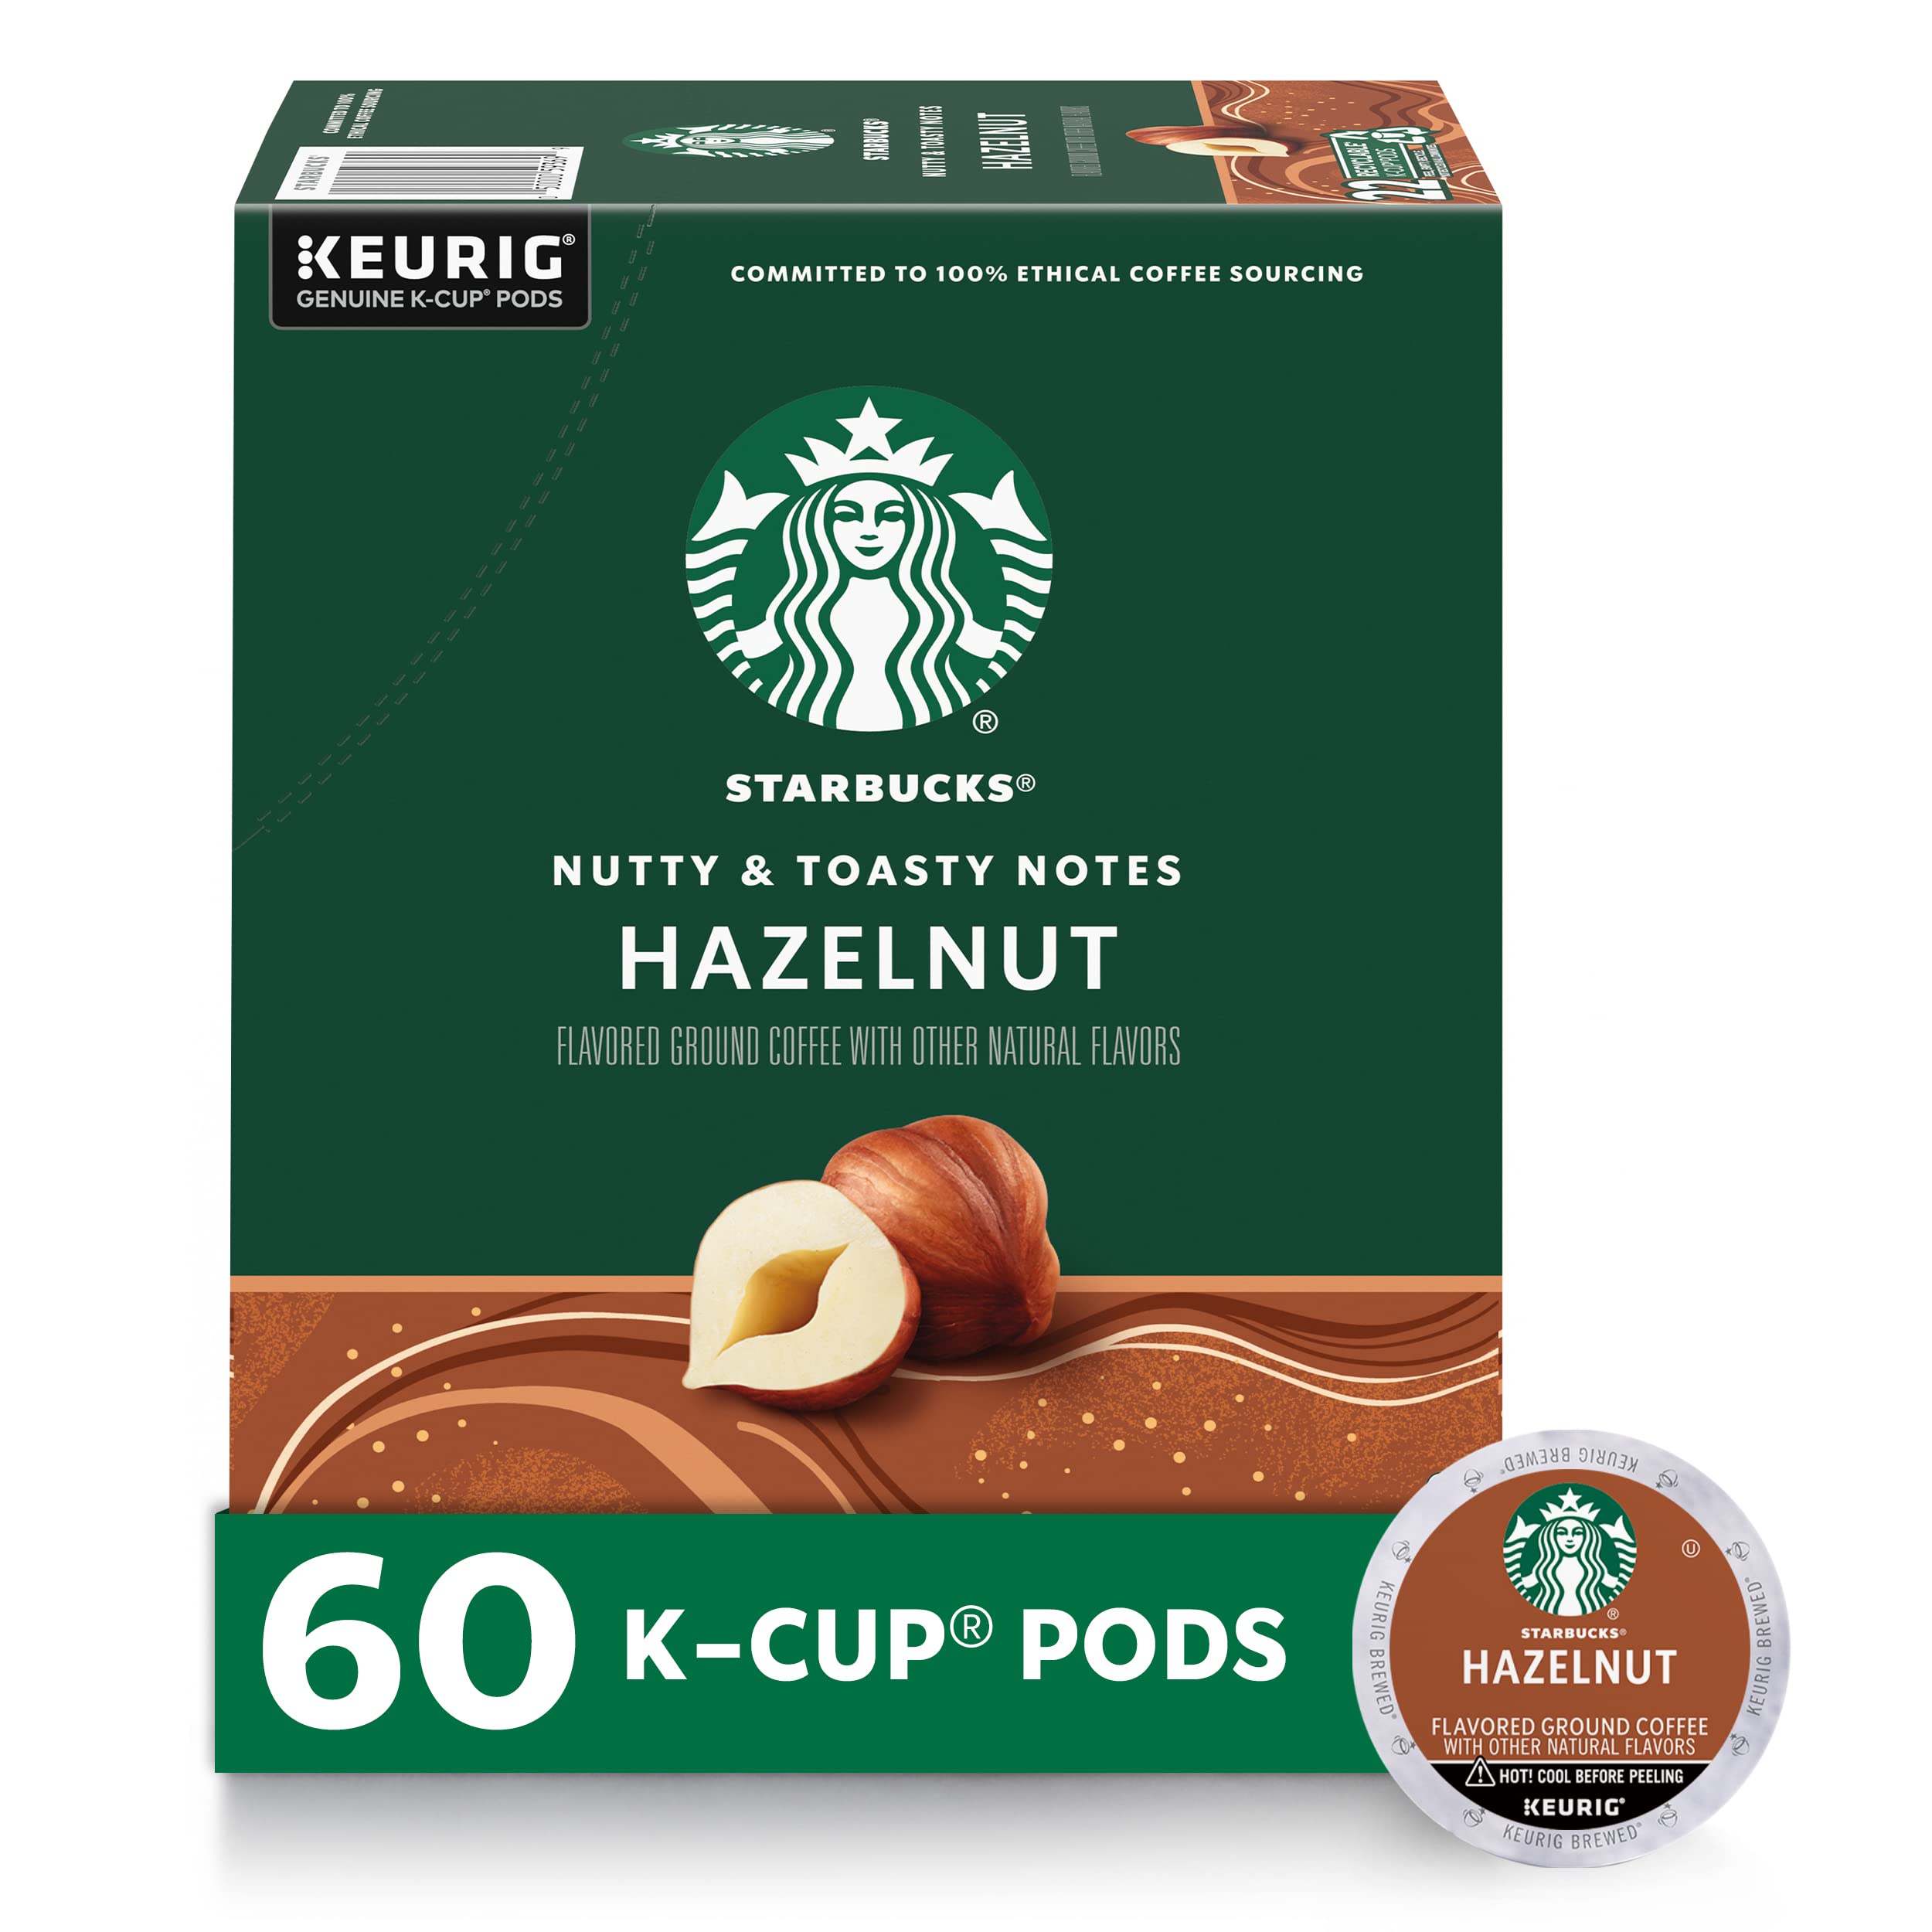 史低价！Starbucks星巴克 中度烘培 K-Cup 咖啡胶囊，60粒，原价$55.55，现点击coupon后仅售$30.51，免运费！